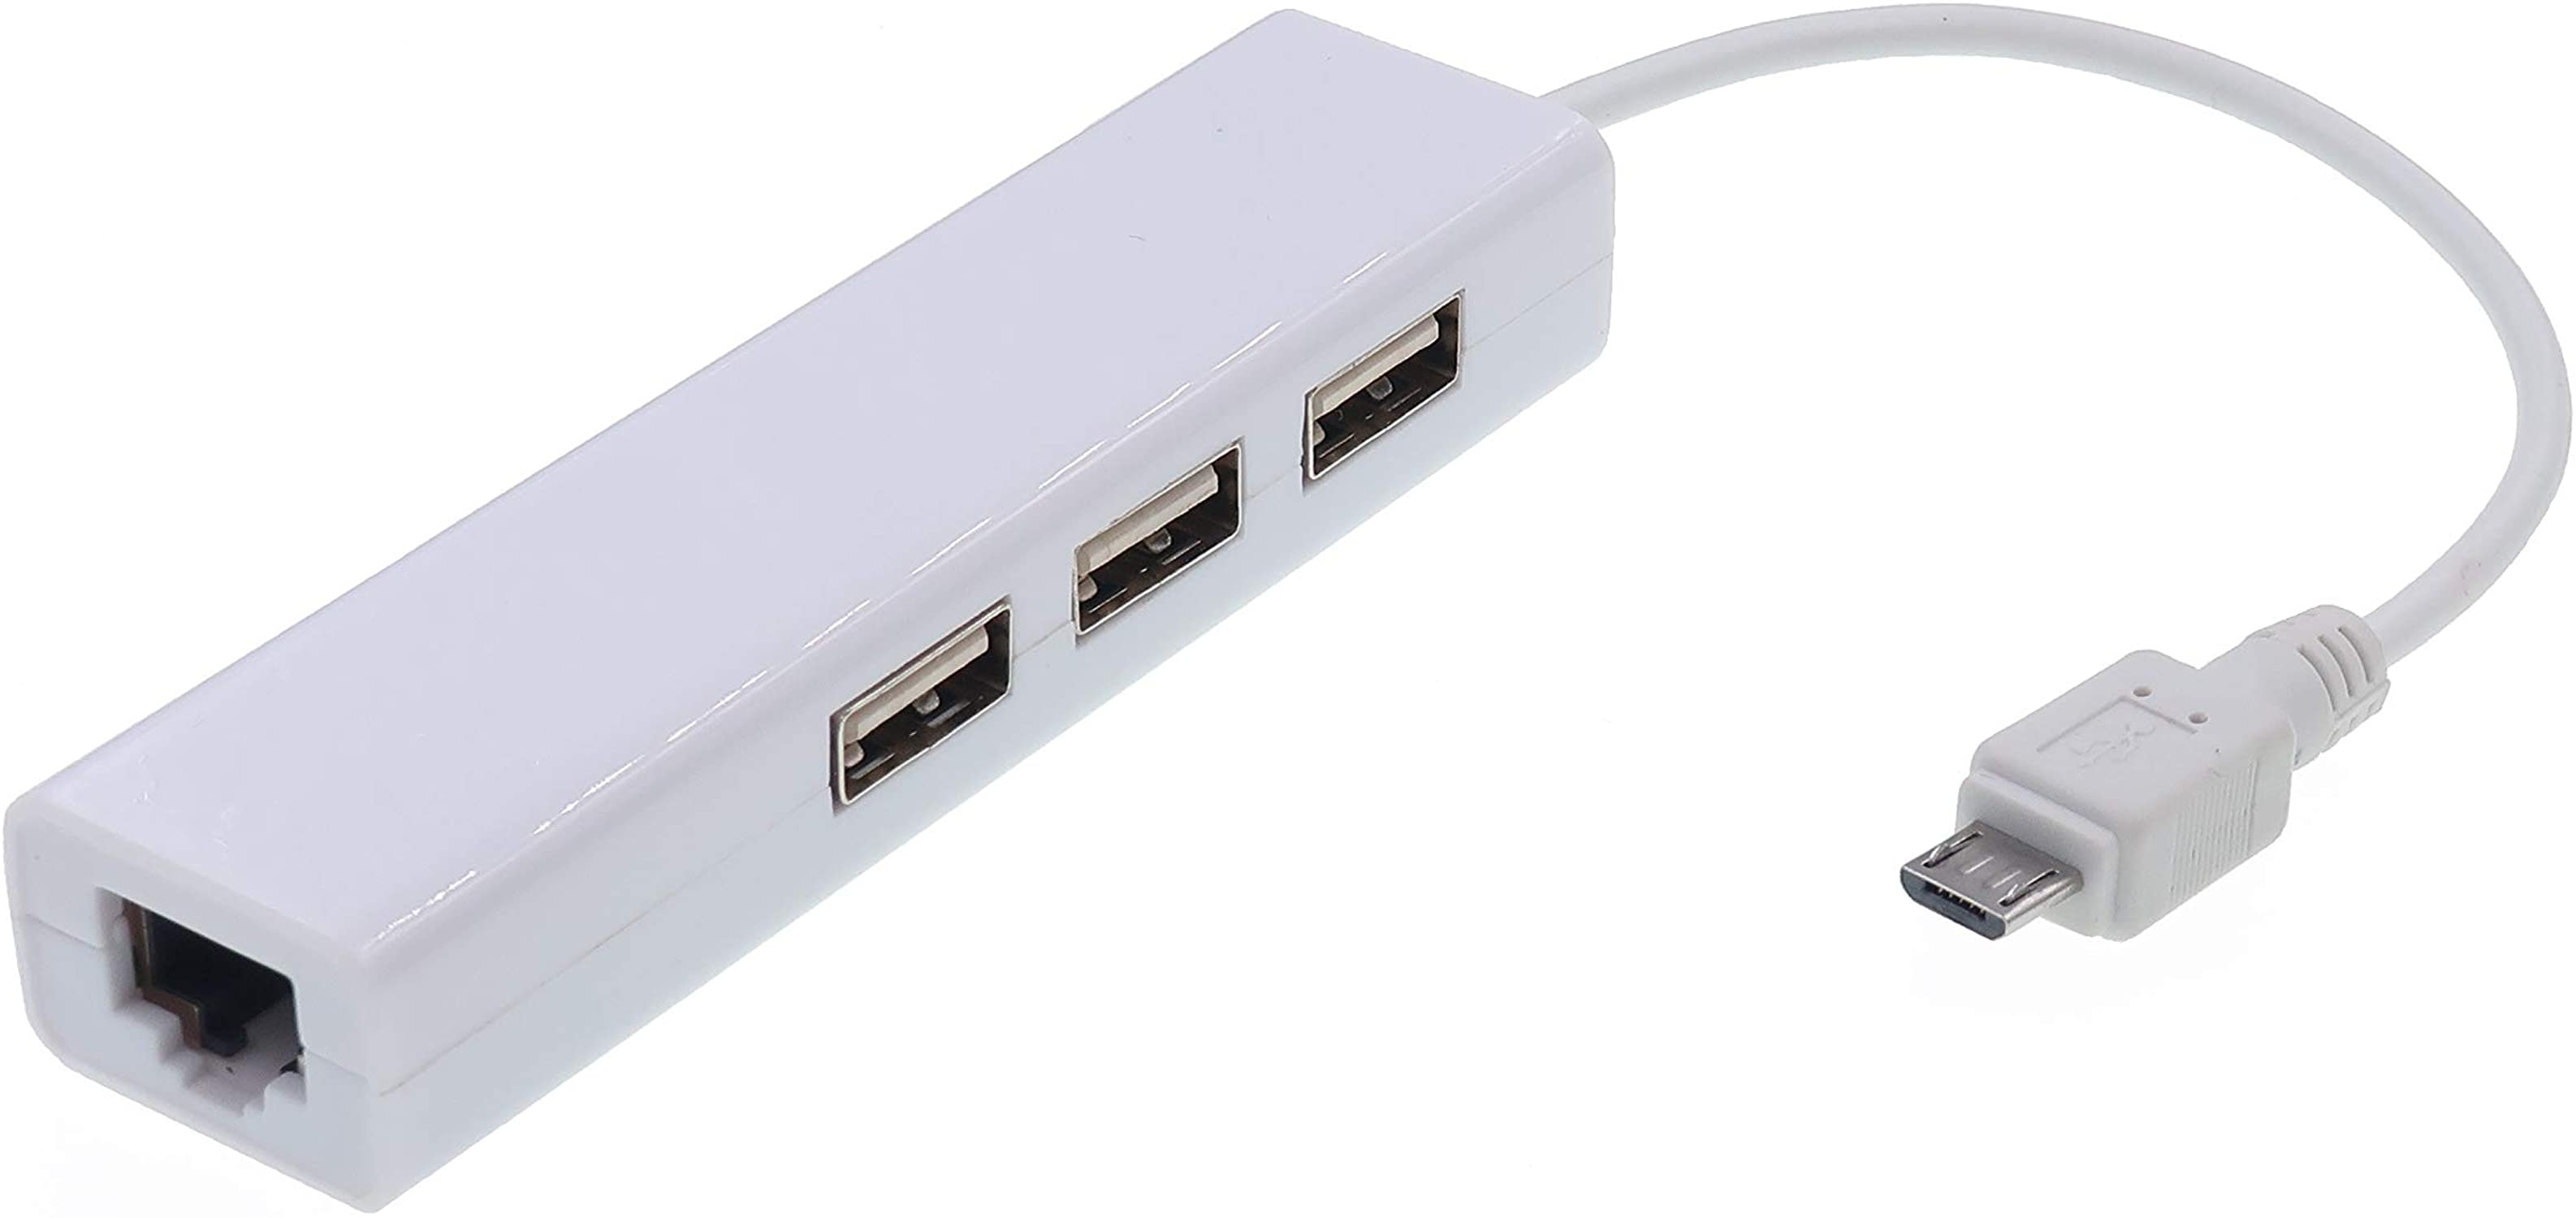 Adaptador Internet Micro-usb A Ethernet Rj45 Chromecast Google